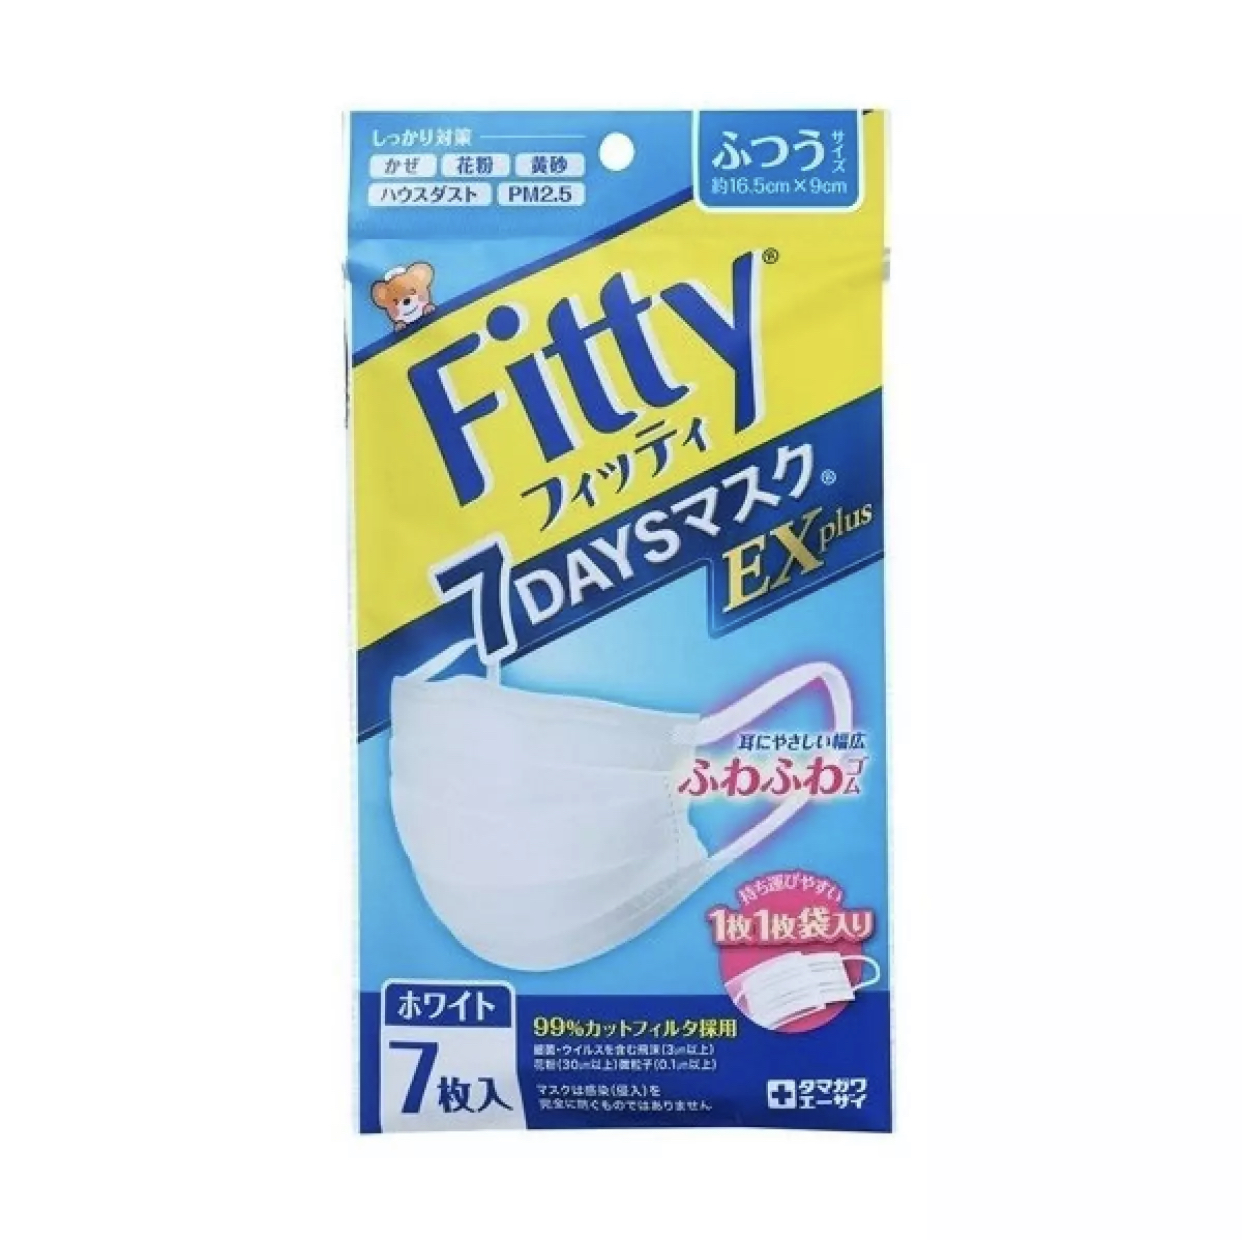 แมสญี่ปุ่นแท้?✨ Fitty 7Days EX Plus✨ Regular Size 16.5X9 cm เหมาะสำหรับ? / 1ซอง 7ชิ้น / ซีลพลาสติกทุกชิ้น